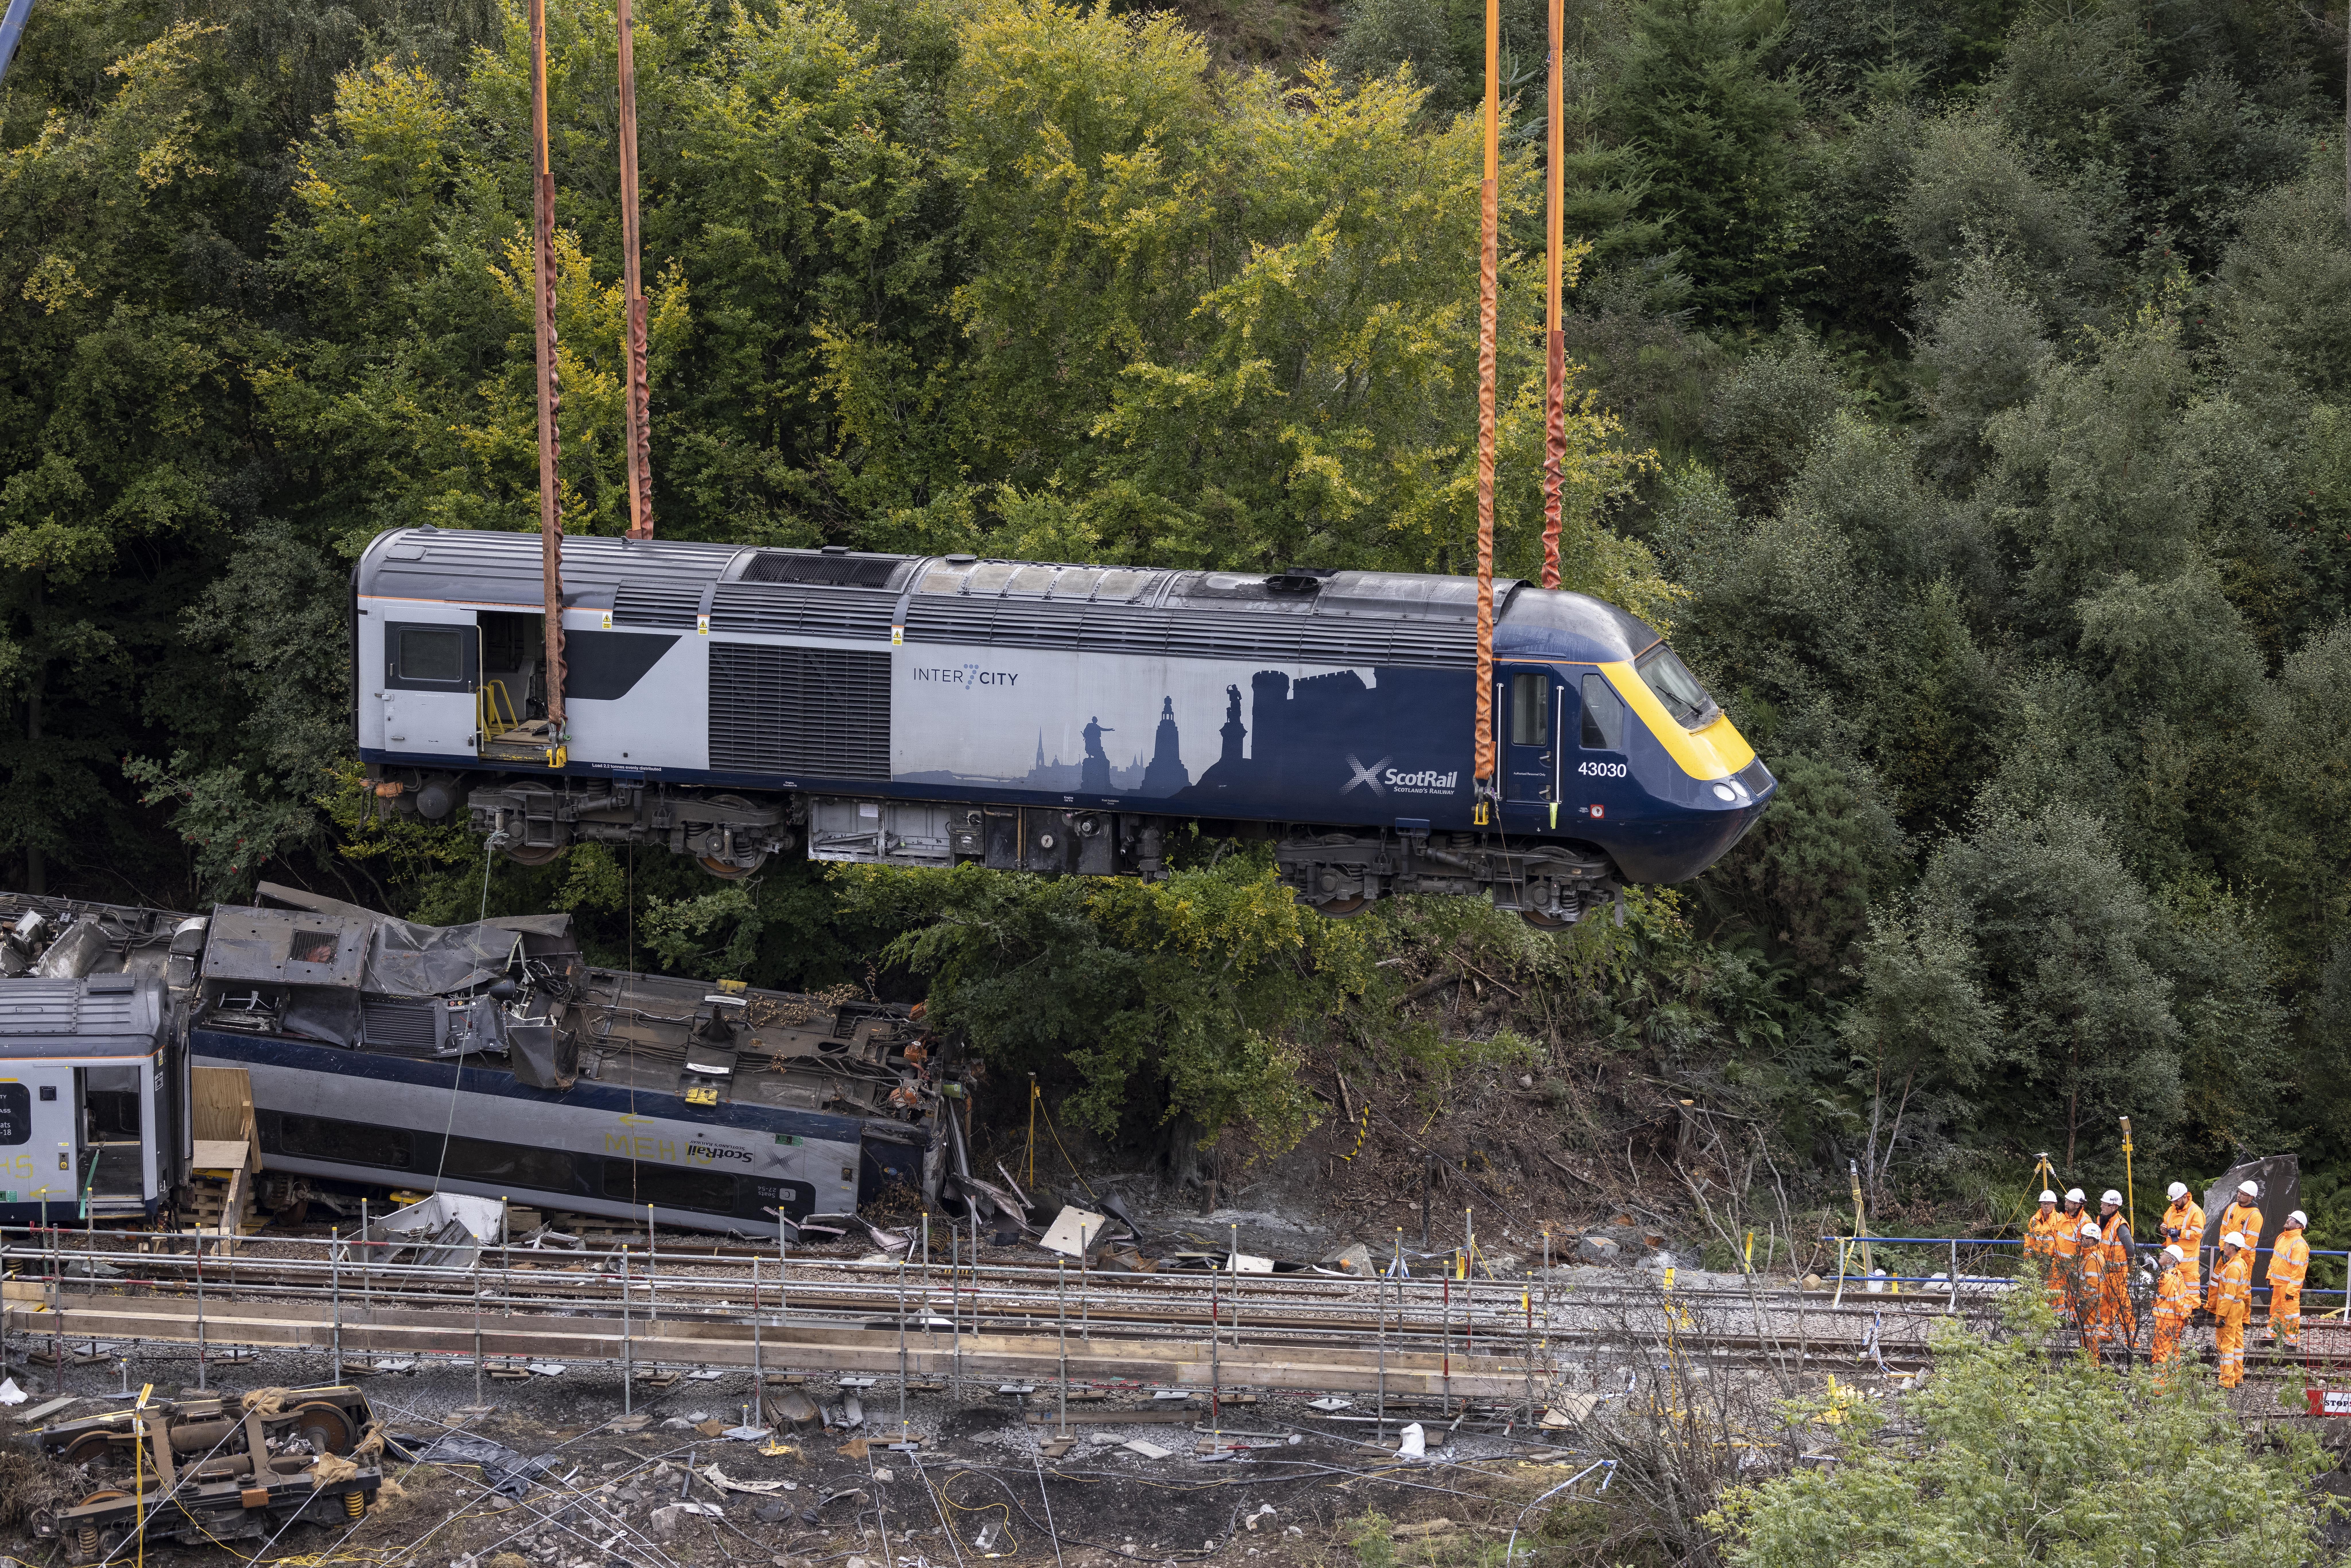 Three people died when the train derailed near Stonehaven, Aberdeenshire (Derek Ironside)